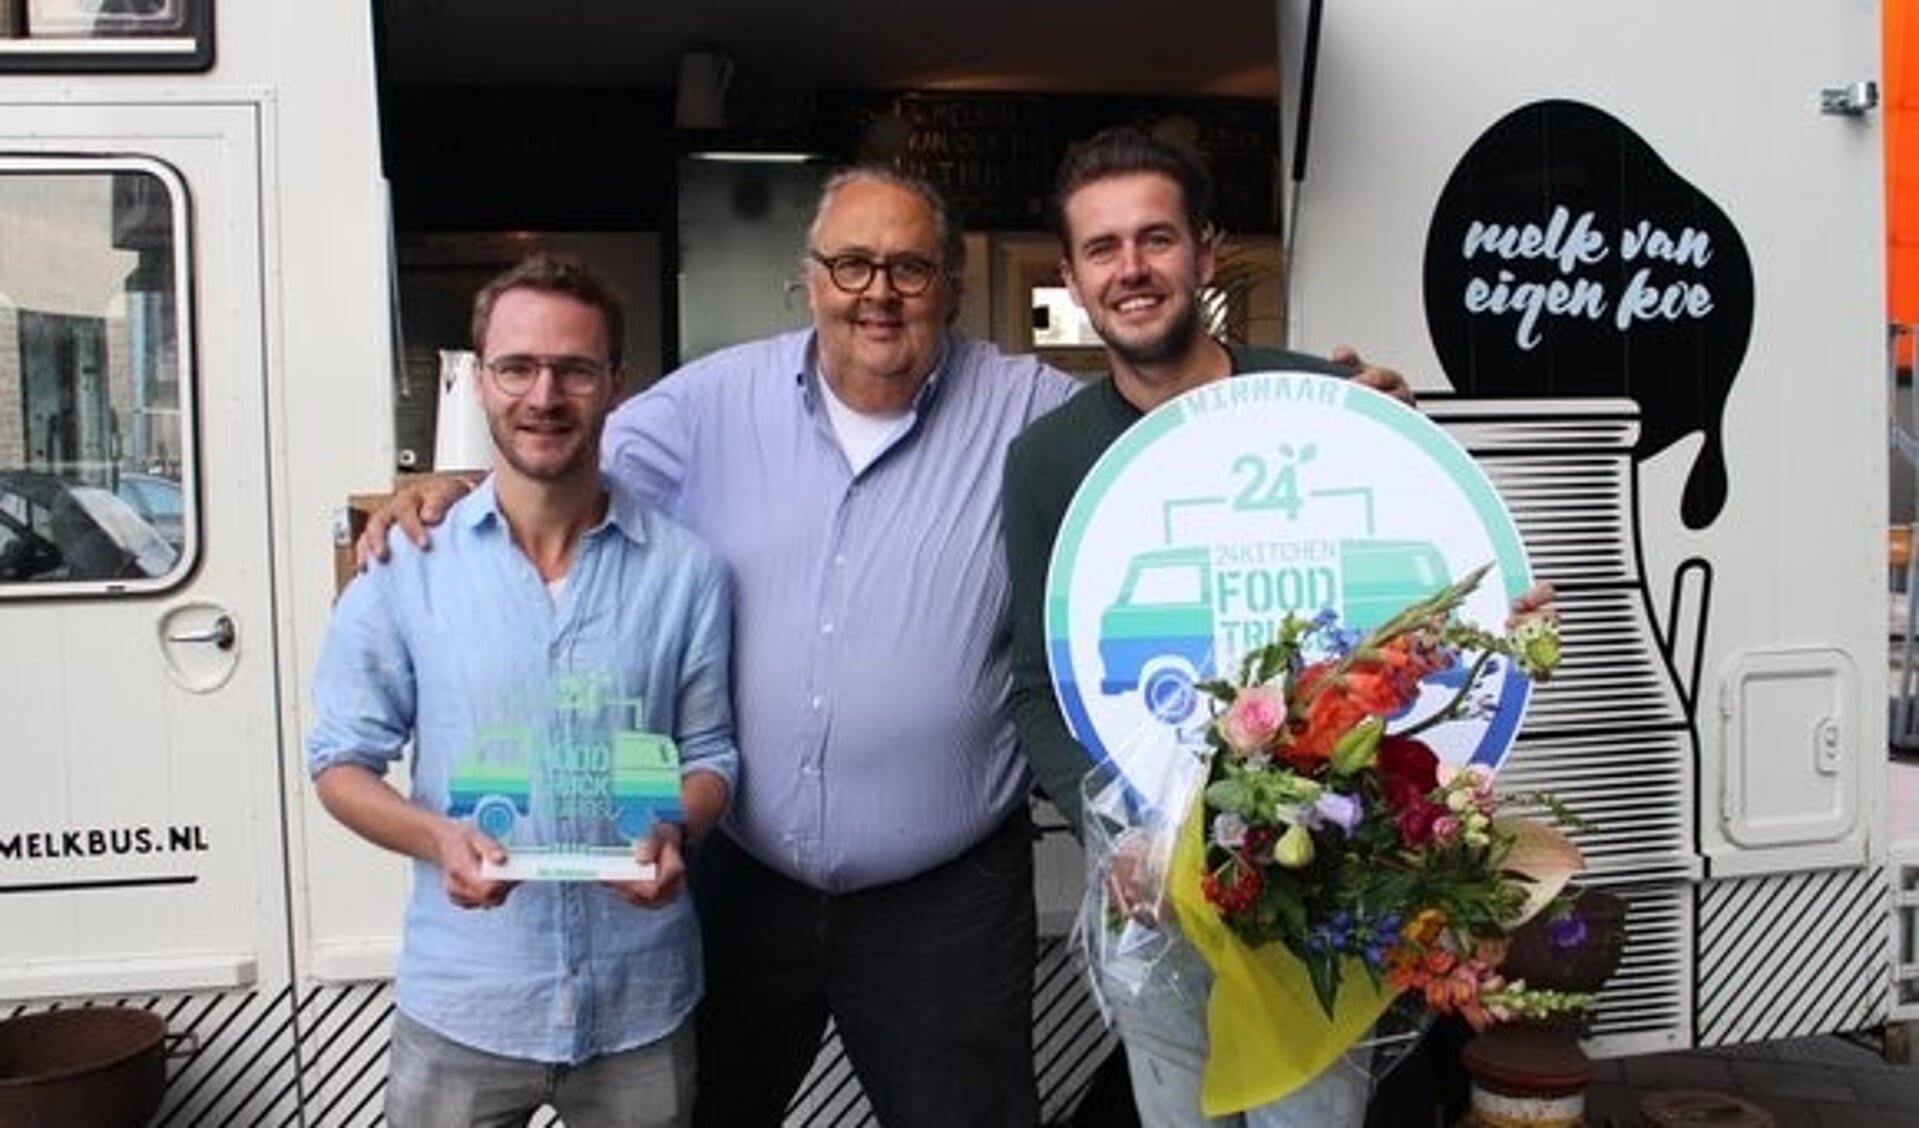  Winnaars 24Kitchen Food Truck Awards 2018:  Robert Geessink en Wout Leerink van De Melkbus, samen met Julius Jaspers. Foto: PR